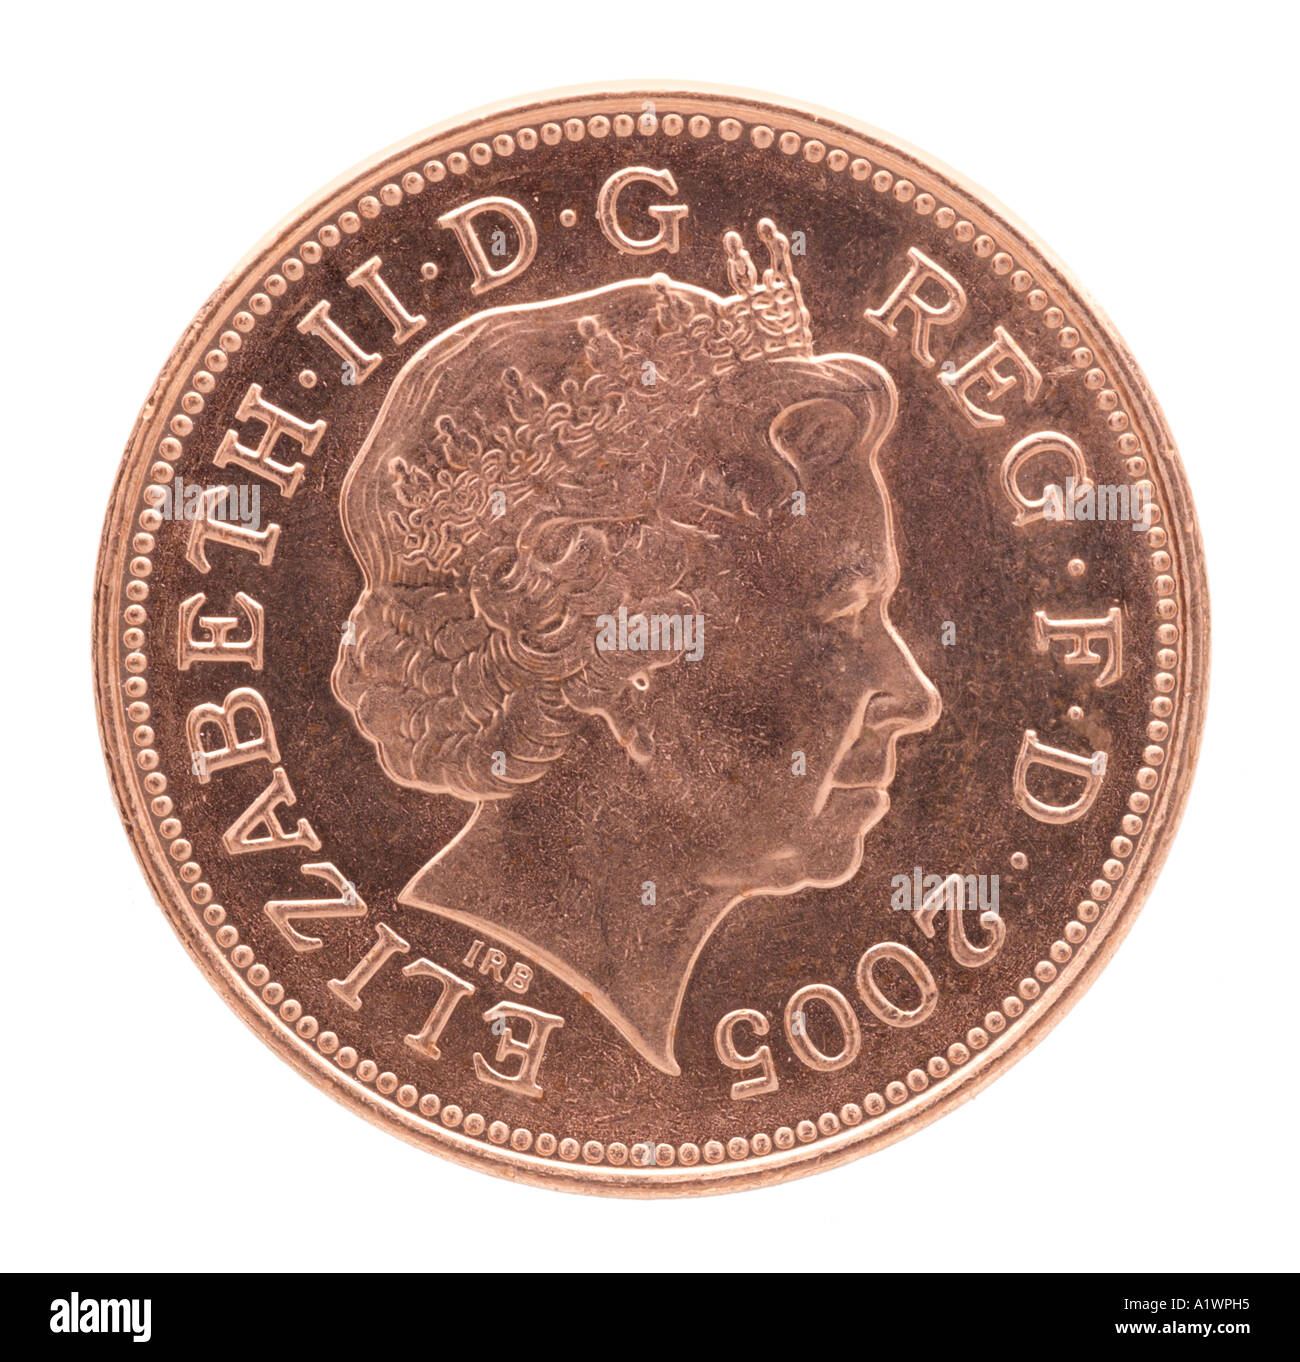 La reine Elizabeth II Regina Reg 2 virgule 2 deux nouveaux pence P droit face profil jeune couronne lumineuse de cuivre Banque D'Images